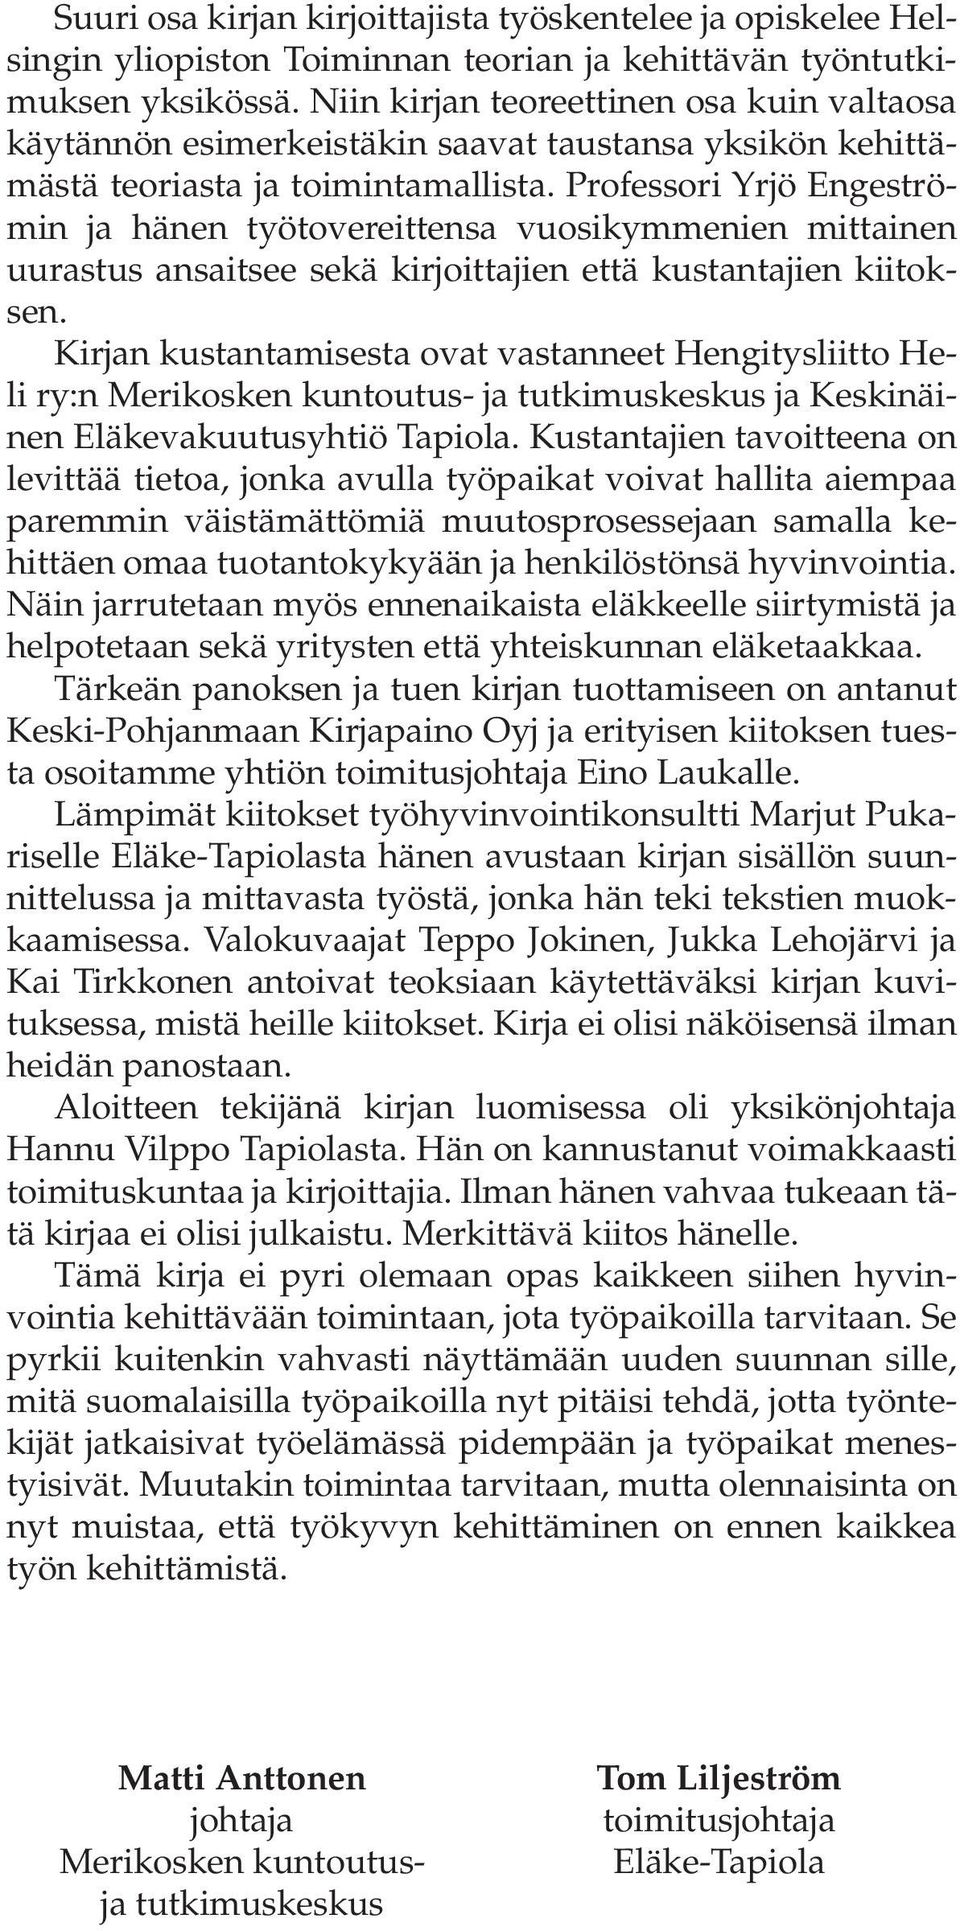 Professori Yrjö Engeströmin ja hänen työtovereittensa vuosikymmenien mittainen uurastus ansaitsee sekä kirjoittajien että kustantajien kiitoksen.